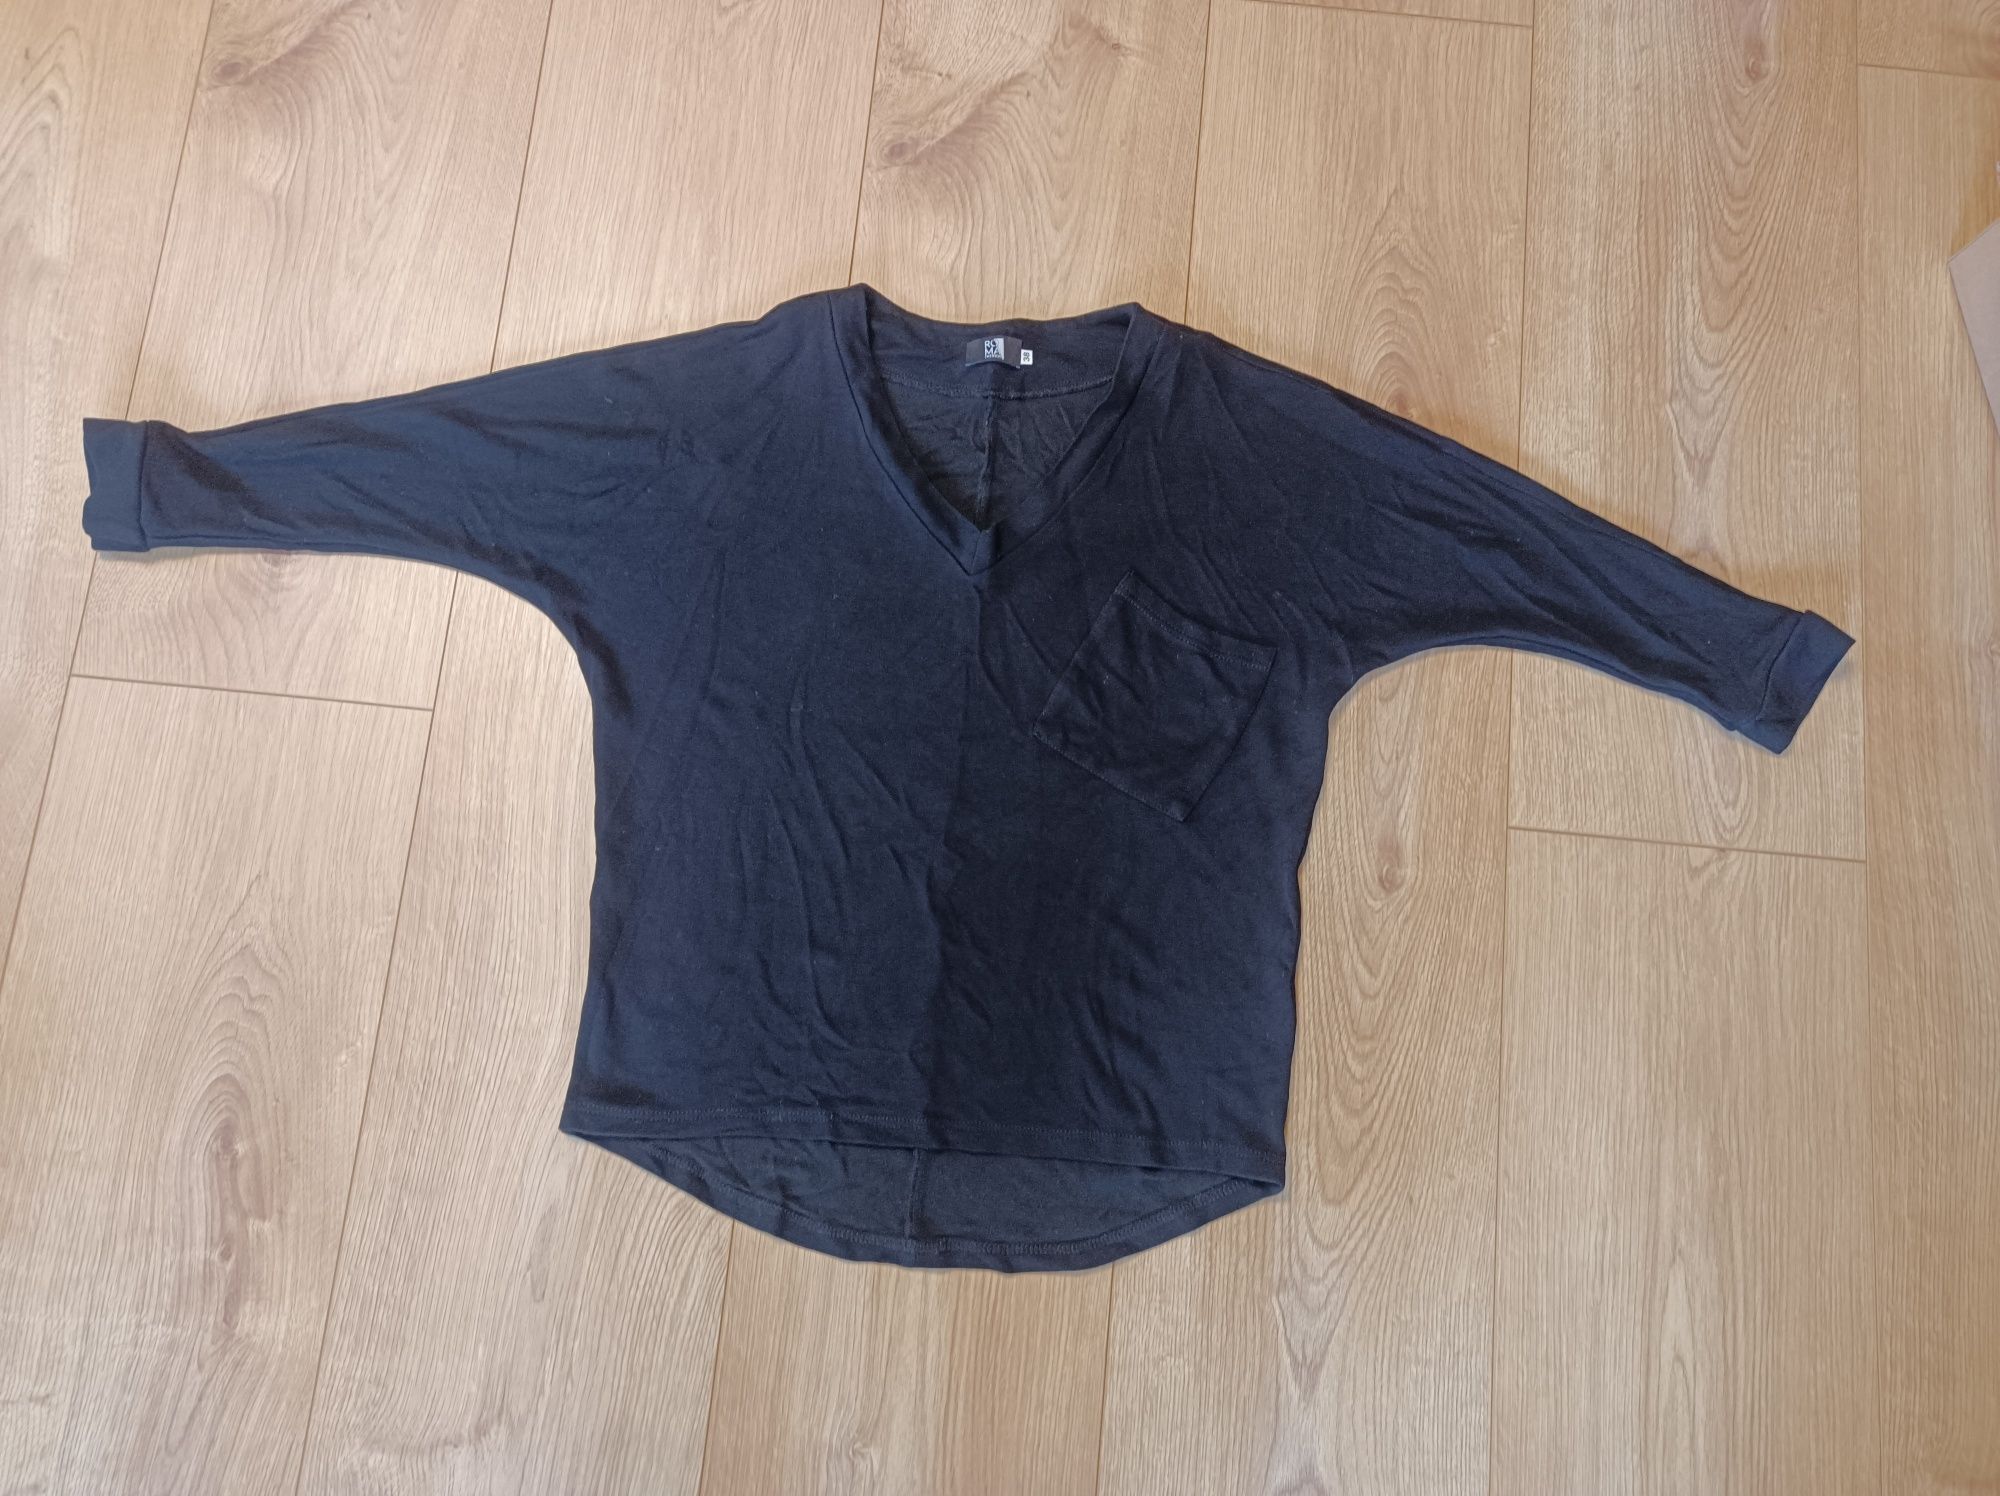 Bluza bluzka damska czarna oversize sportowa kieszeń rozmiar 38-40 M-L